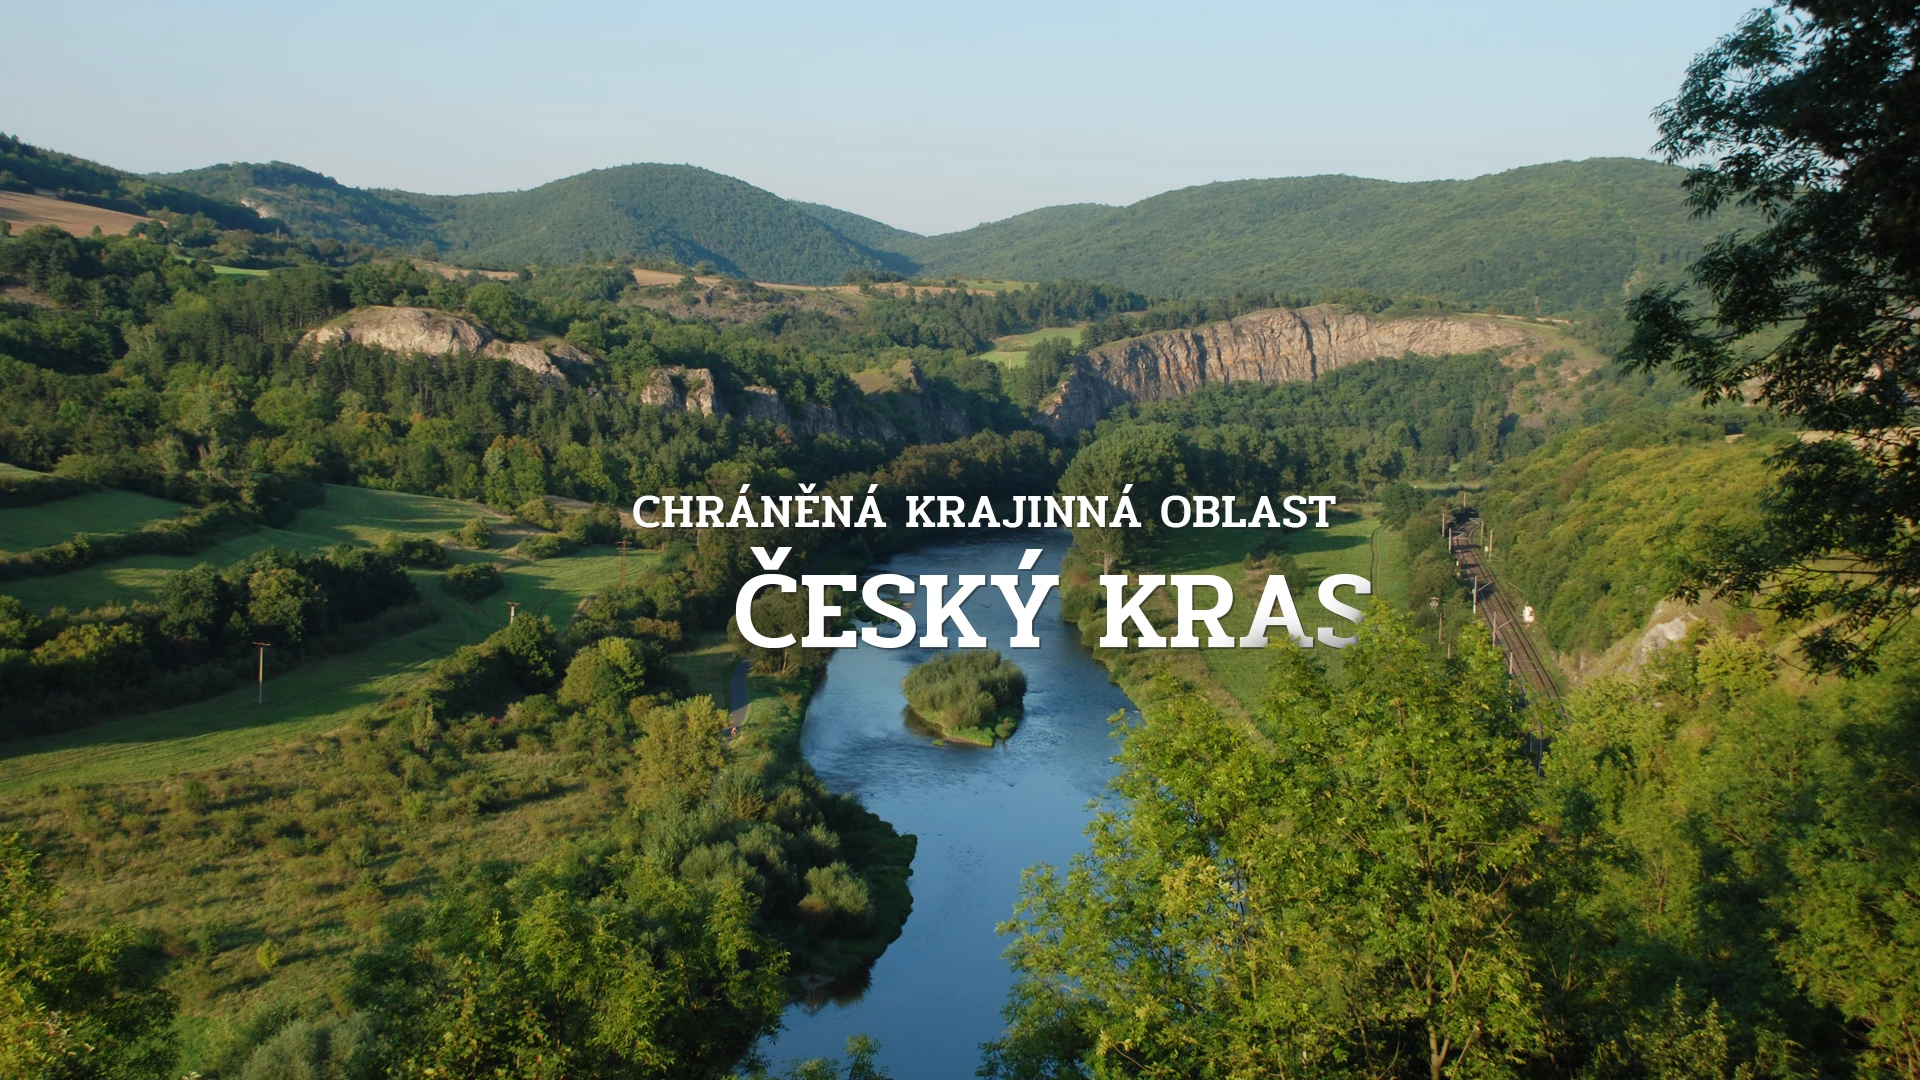 Chráněná krajinná oblast Český kras